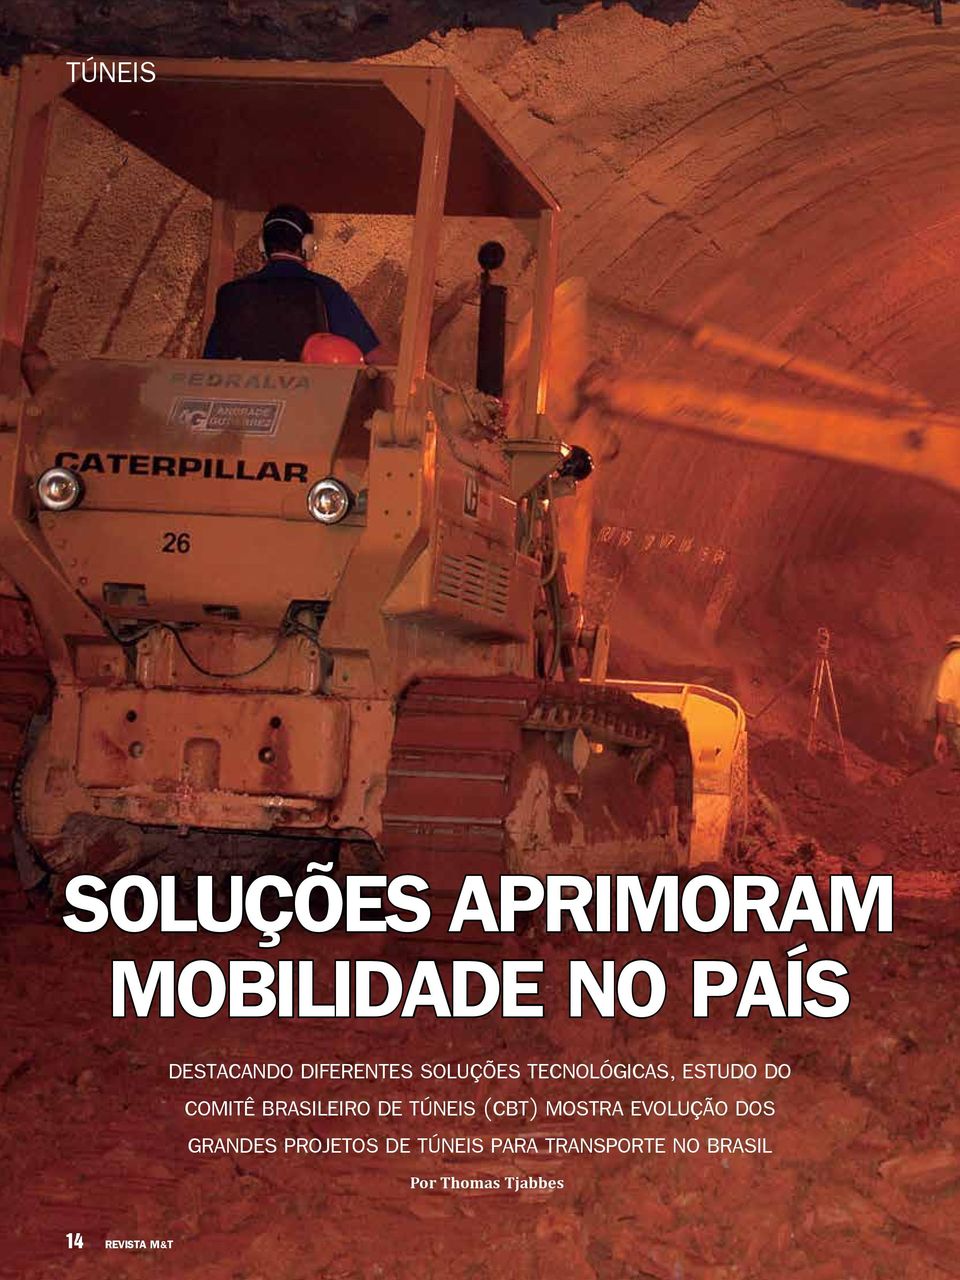 Brasileiro de Túneis (CBT) mostra evolução dos grandes